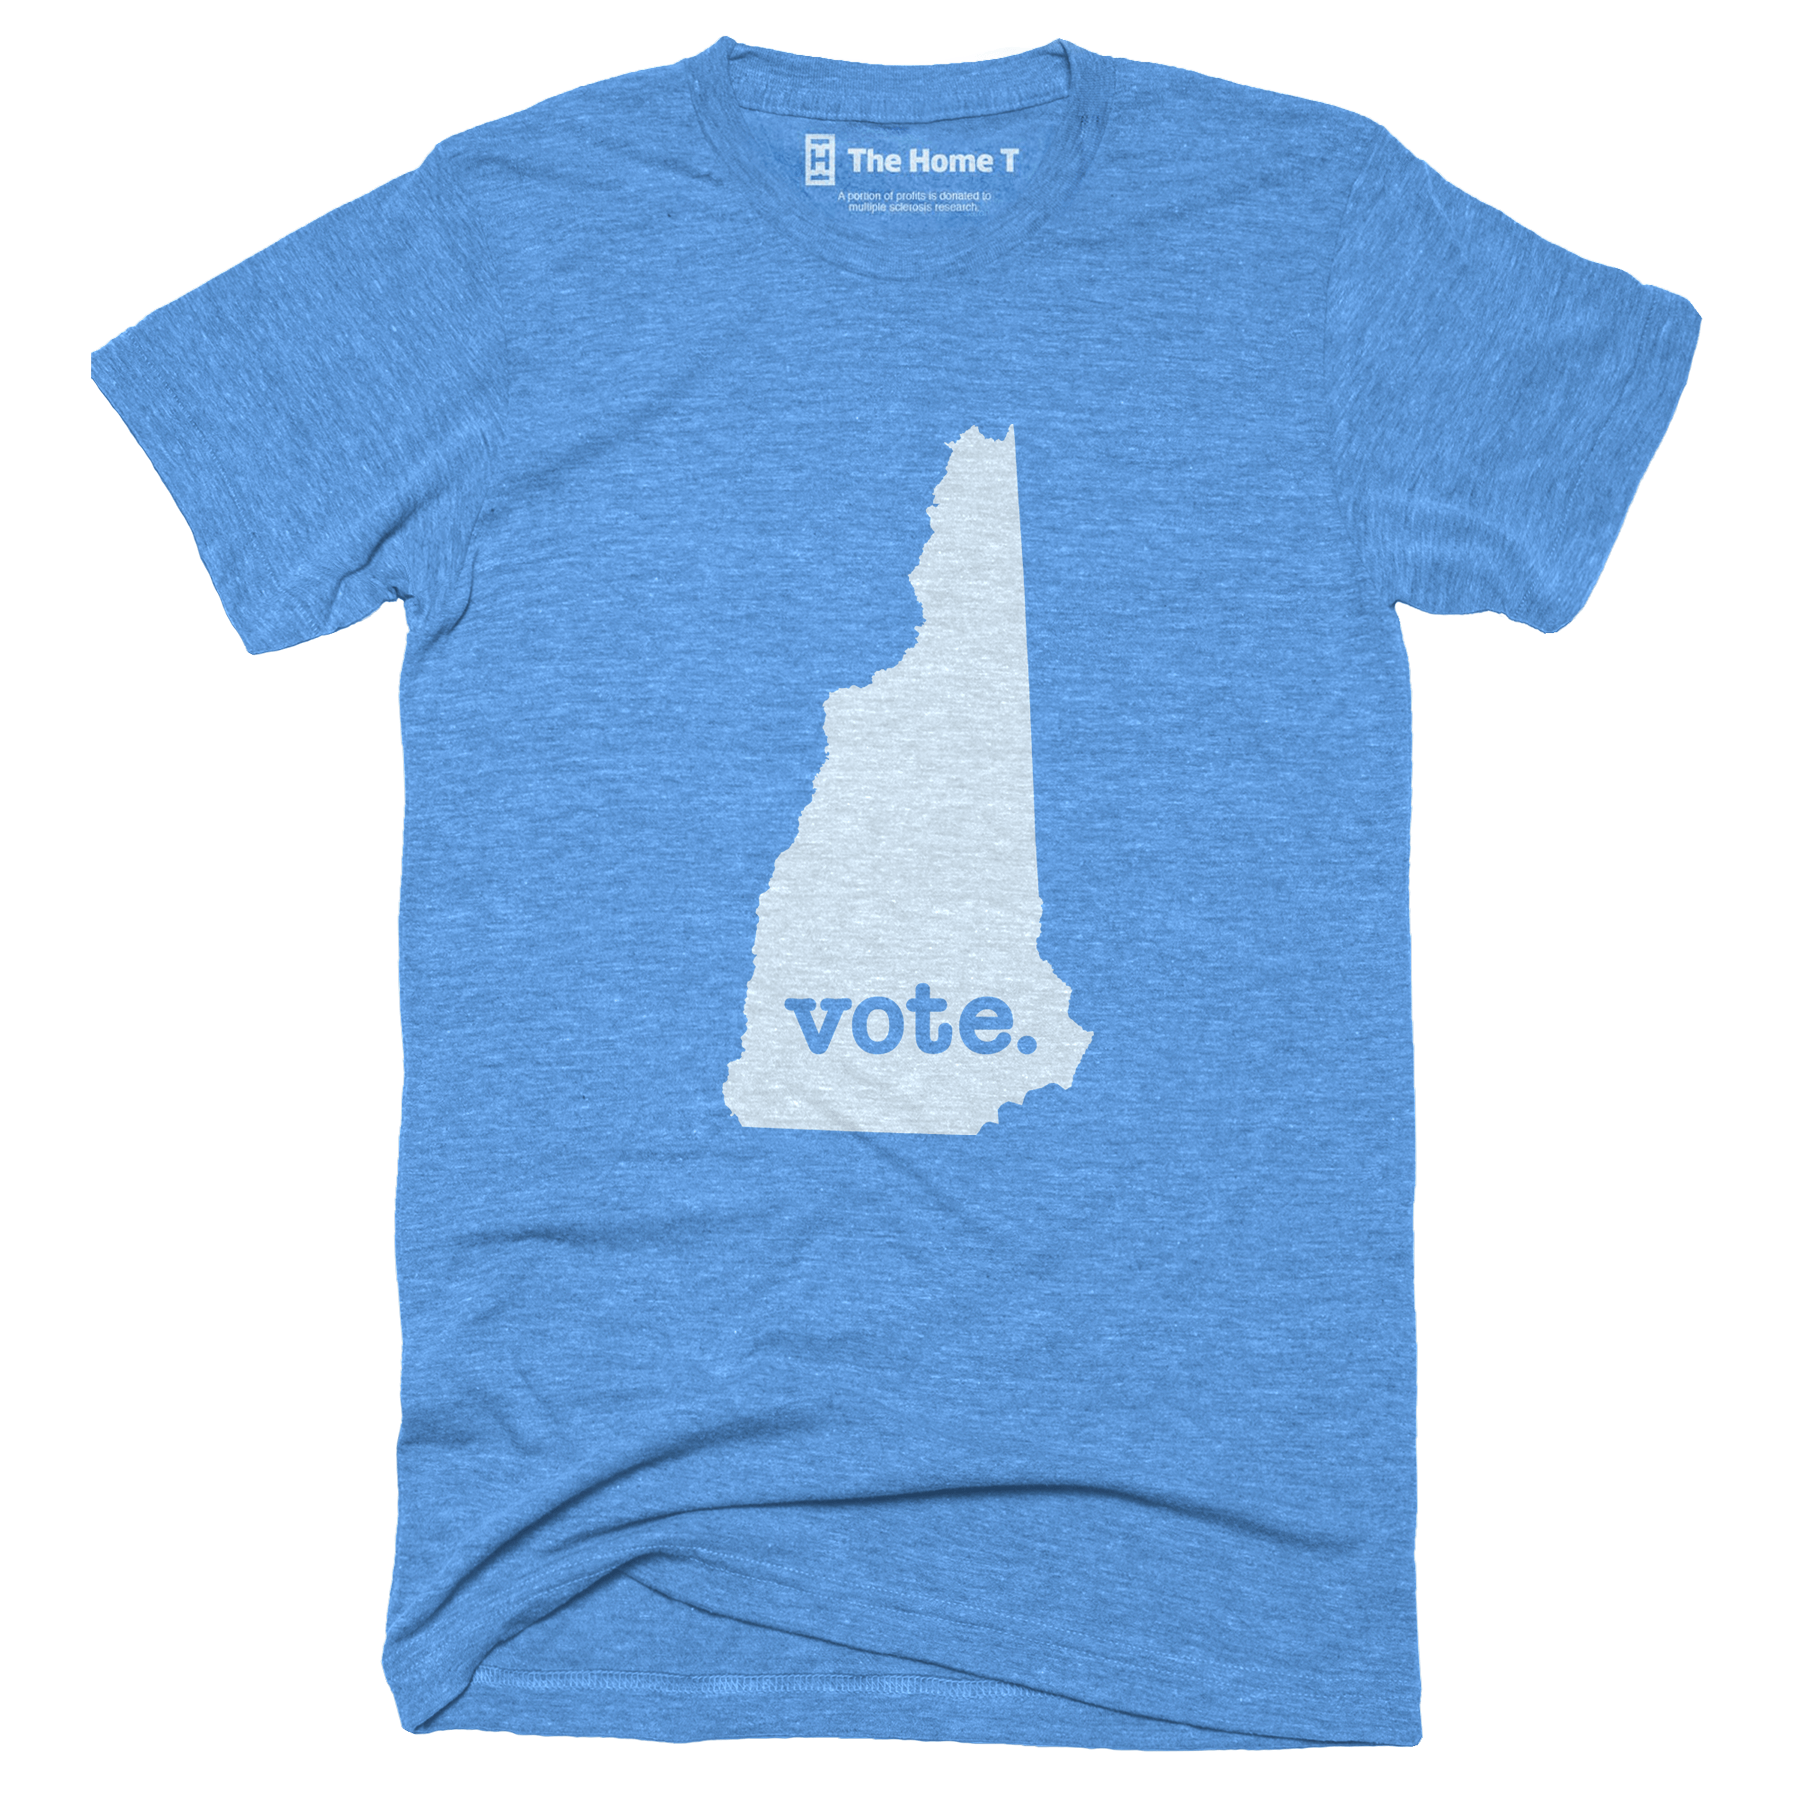 New Hampshire Vote Home T Vote The Home T XS Blue